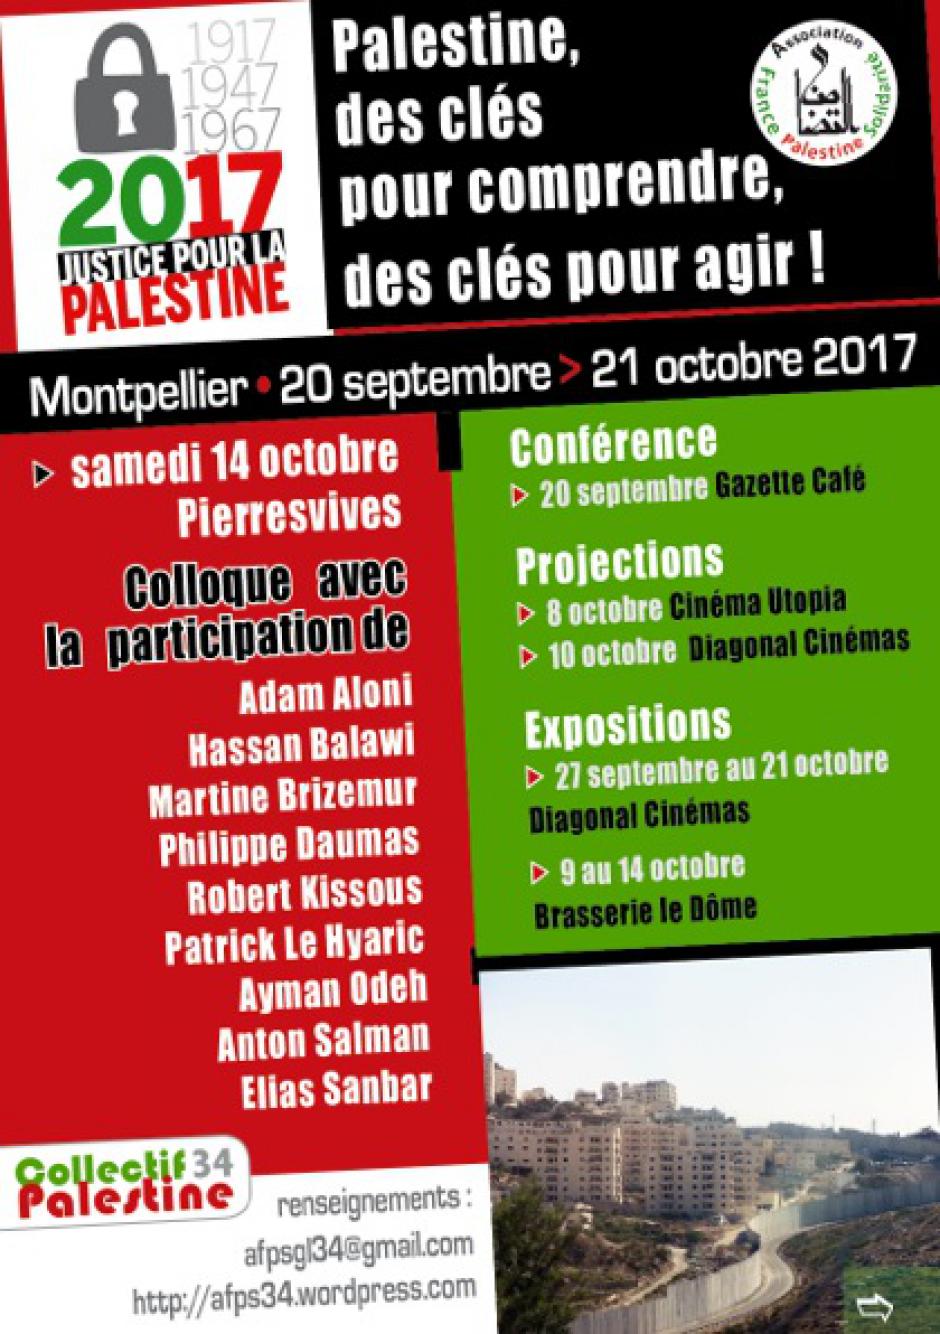 Montpellier - Auditorium Pierresvives (conseil départemental) : Colloque justice pour la Palestine - de la Déclaration Balfour à aujourd'hui, une tragédie coloniale.